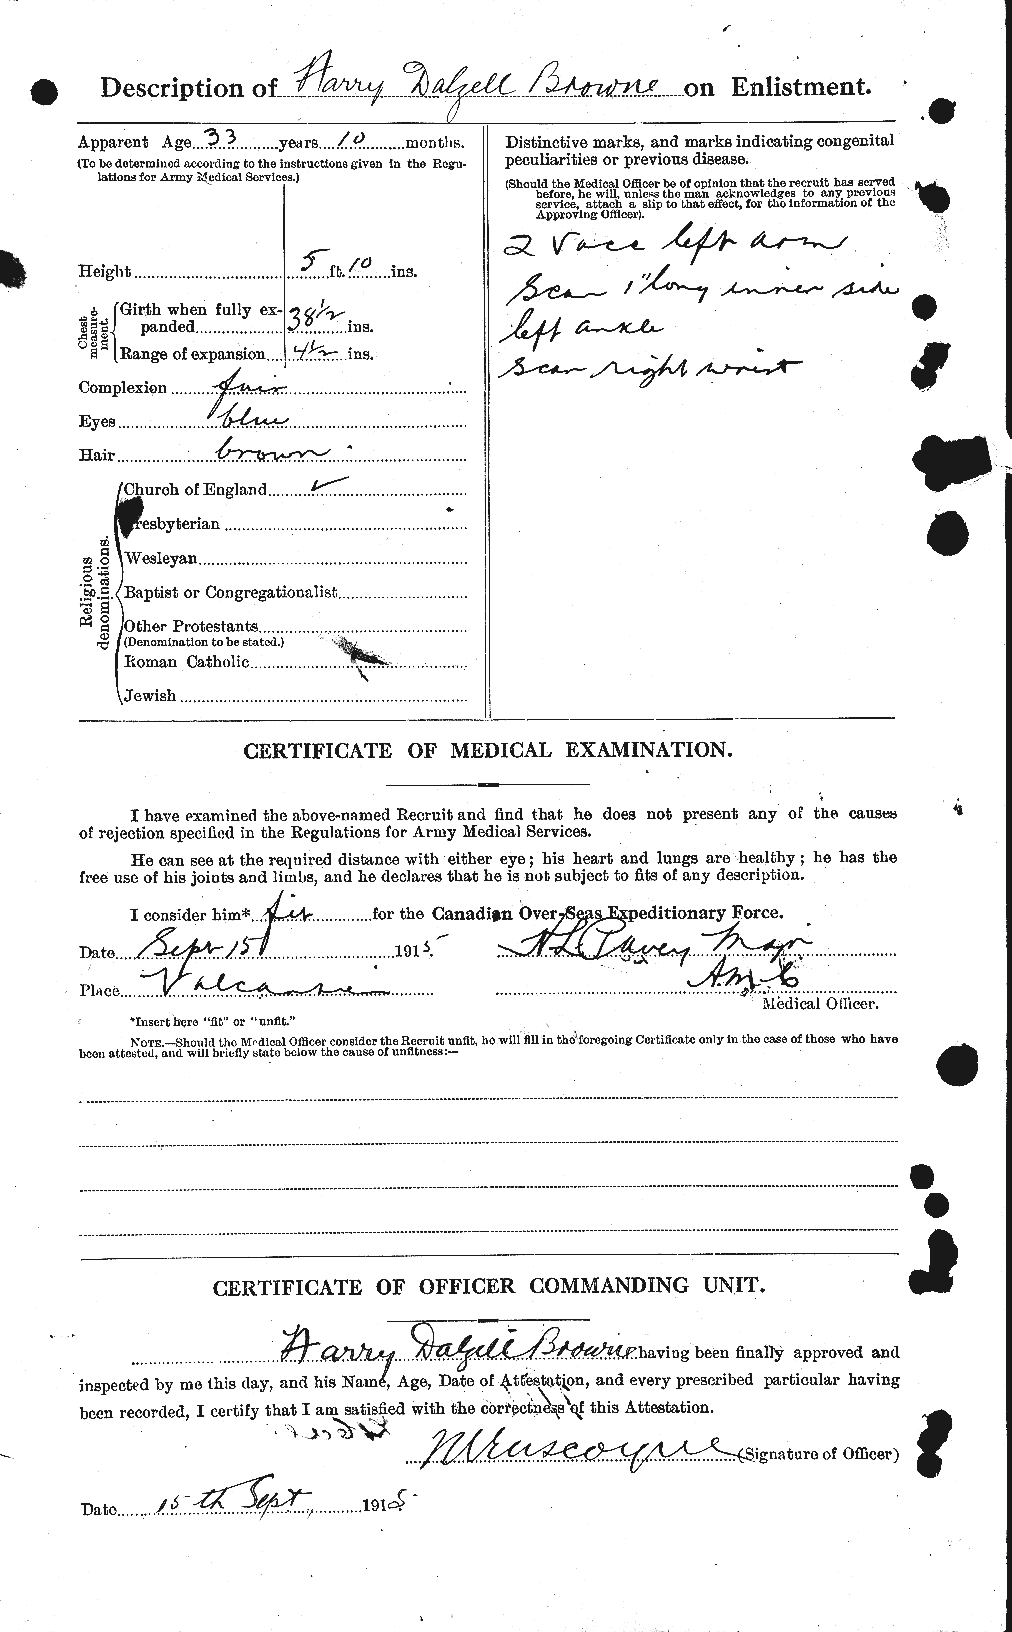 Dossiers du Personnel de la Première Guerre mondiale - CEC 267341b